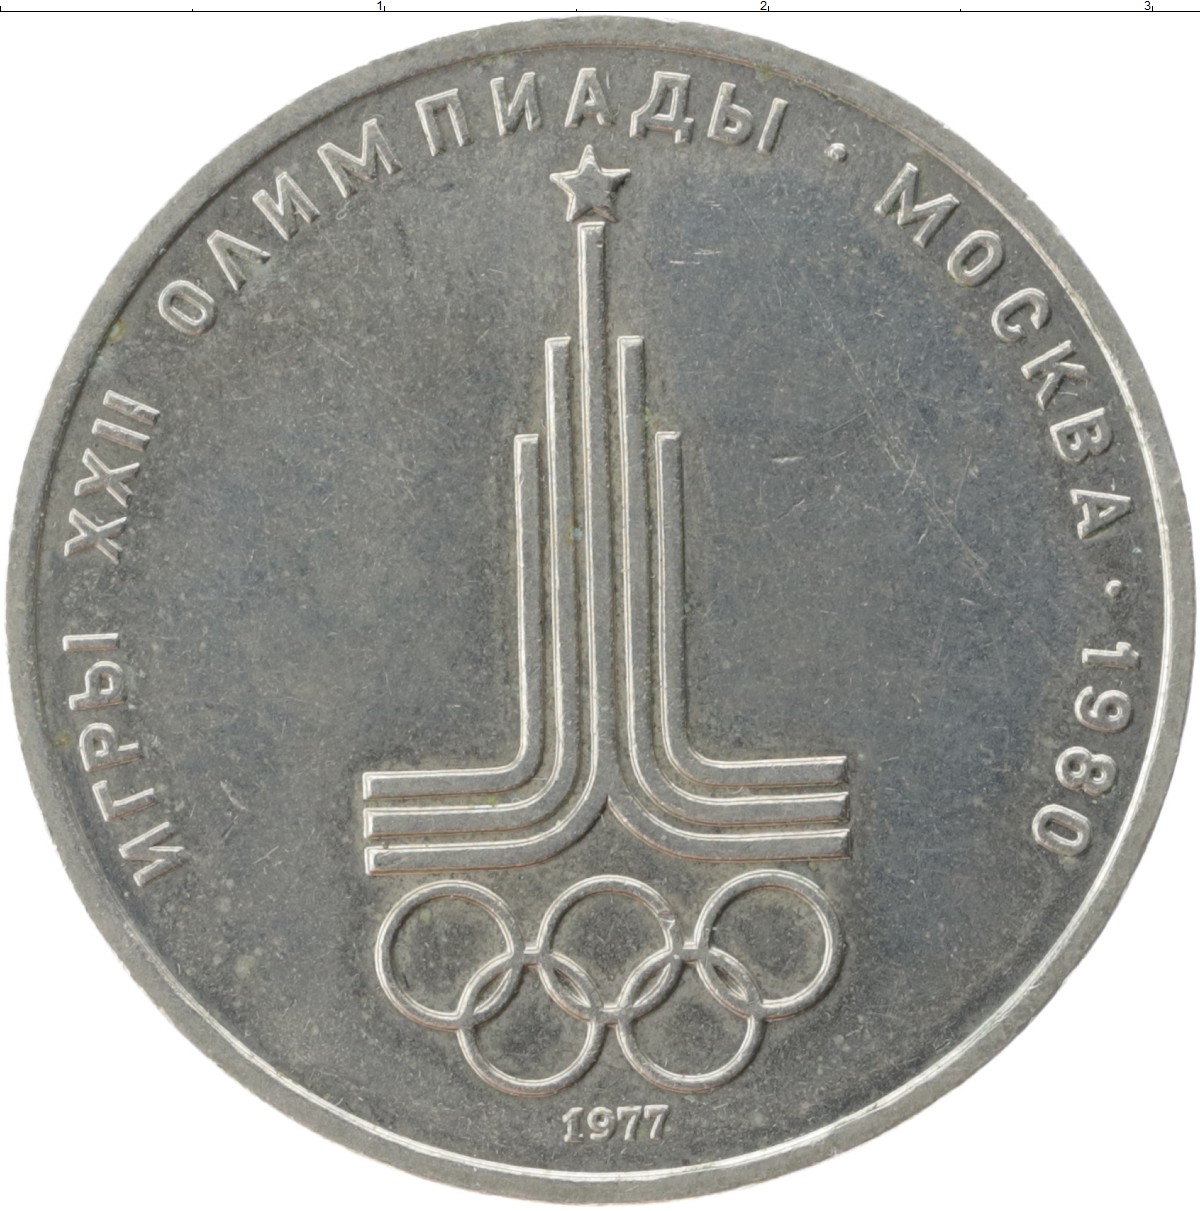 14 80 в рублях. 1 Рубль СССР 1980 год игры олимпиады Москва. Монета СССР 1 рубль 1980 года Олимпийский.